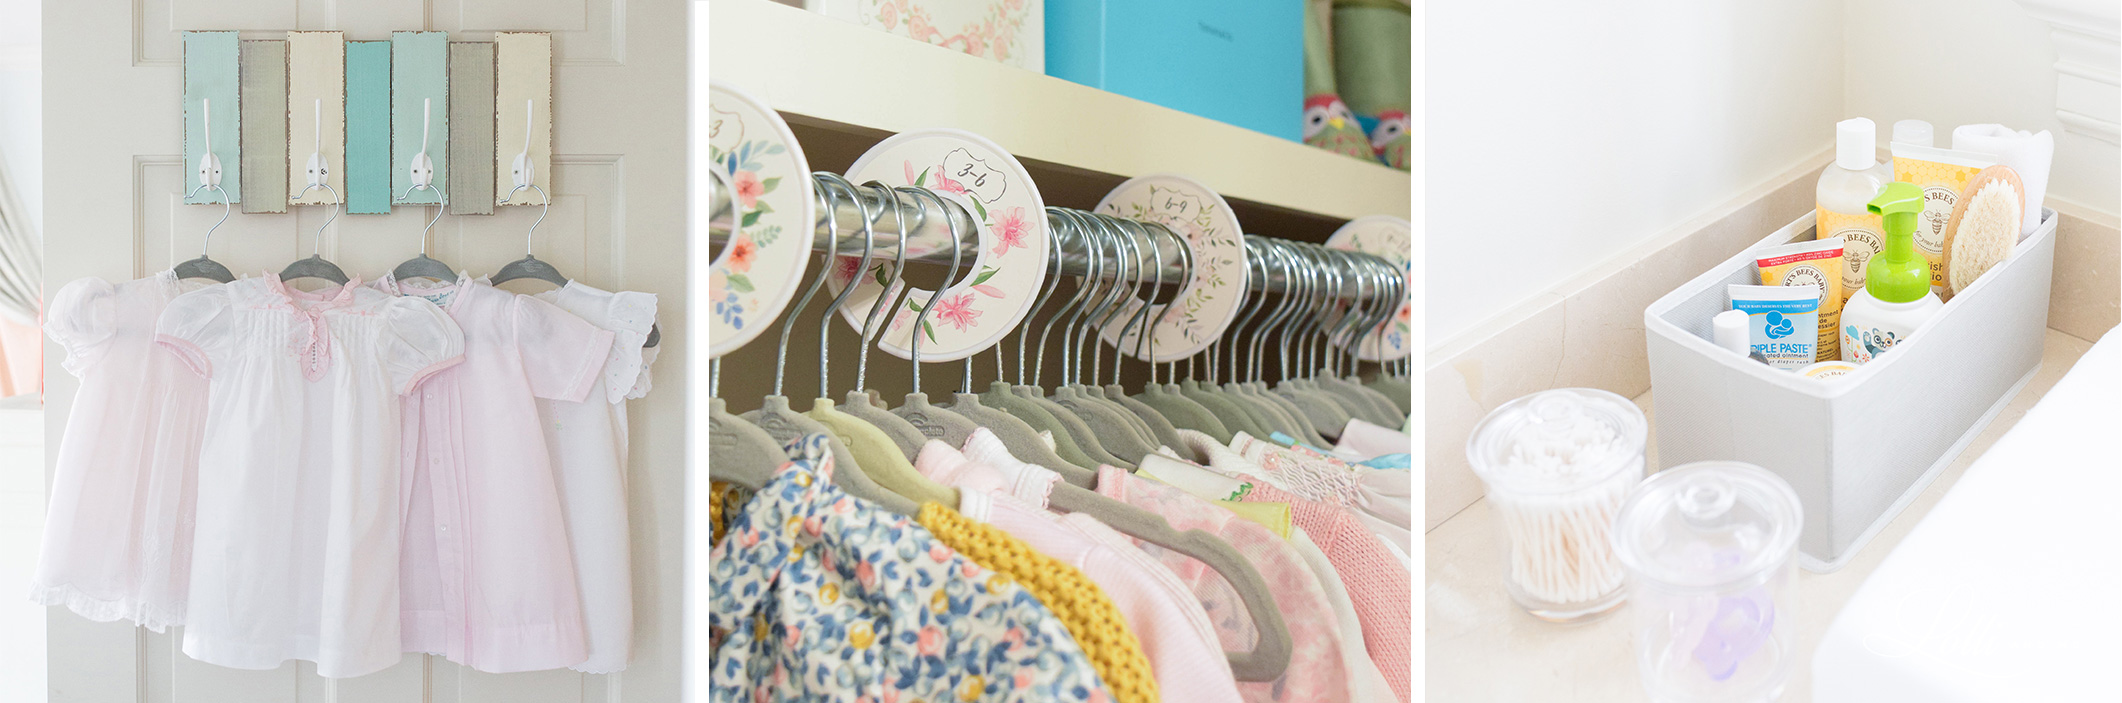 baby clothes closet details